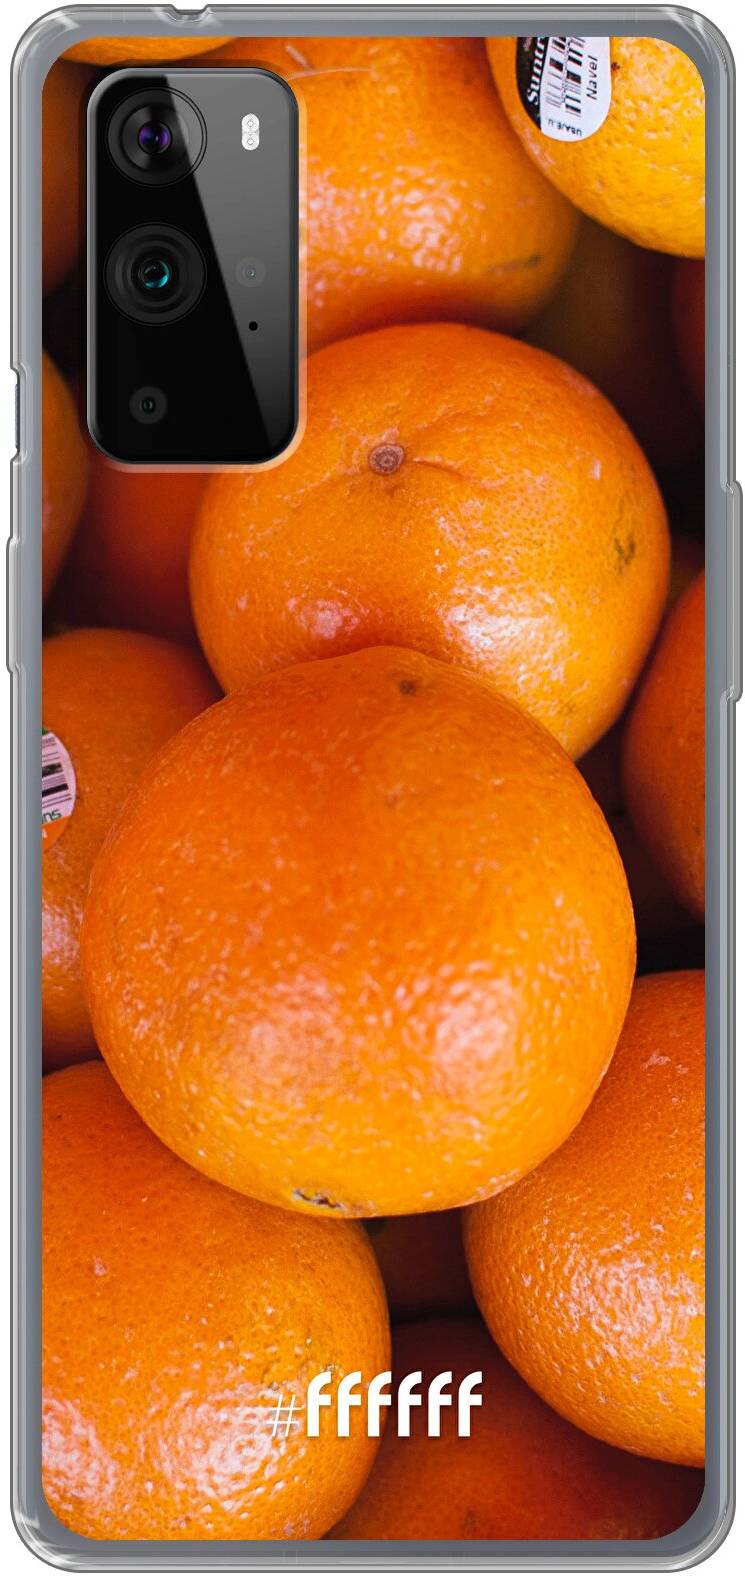 Sinaasappel 9 Pro